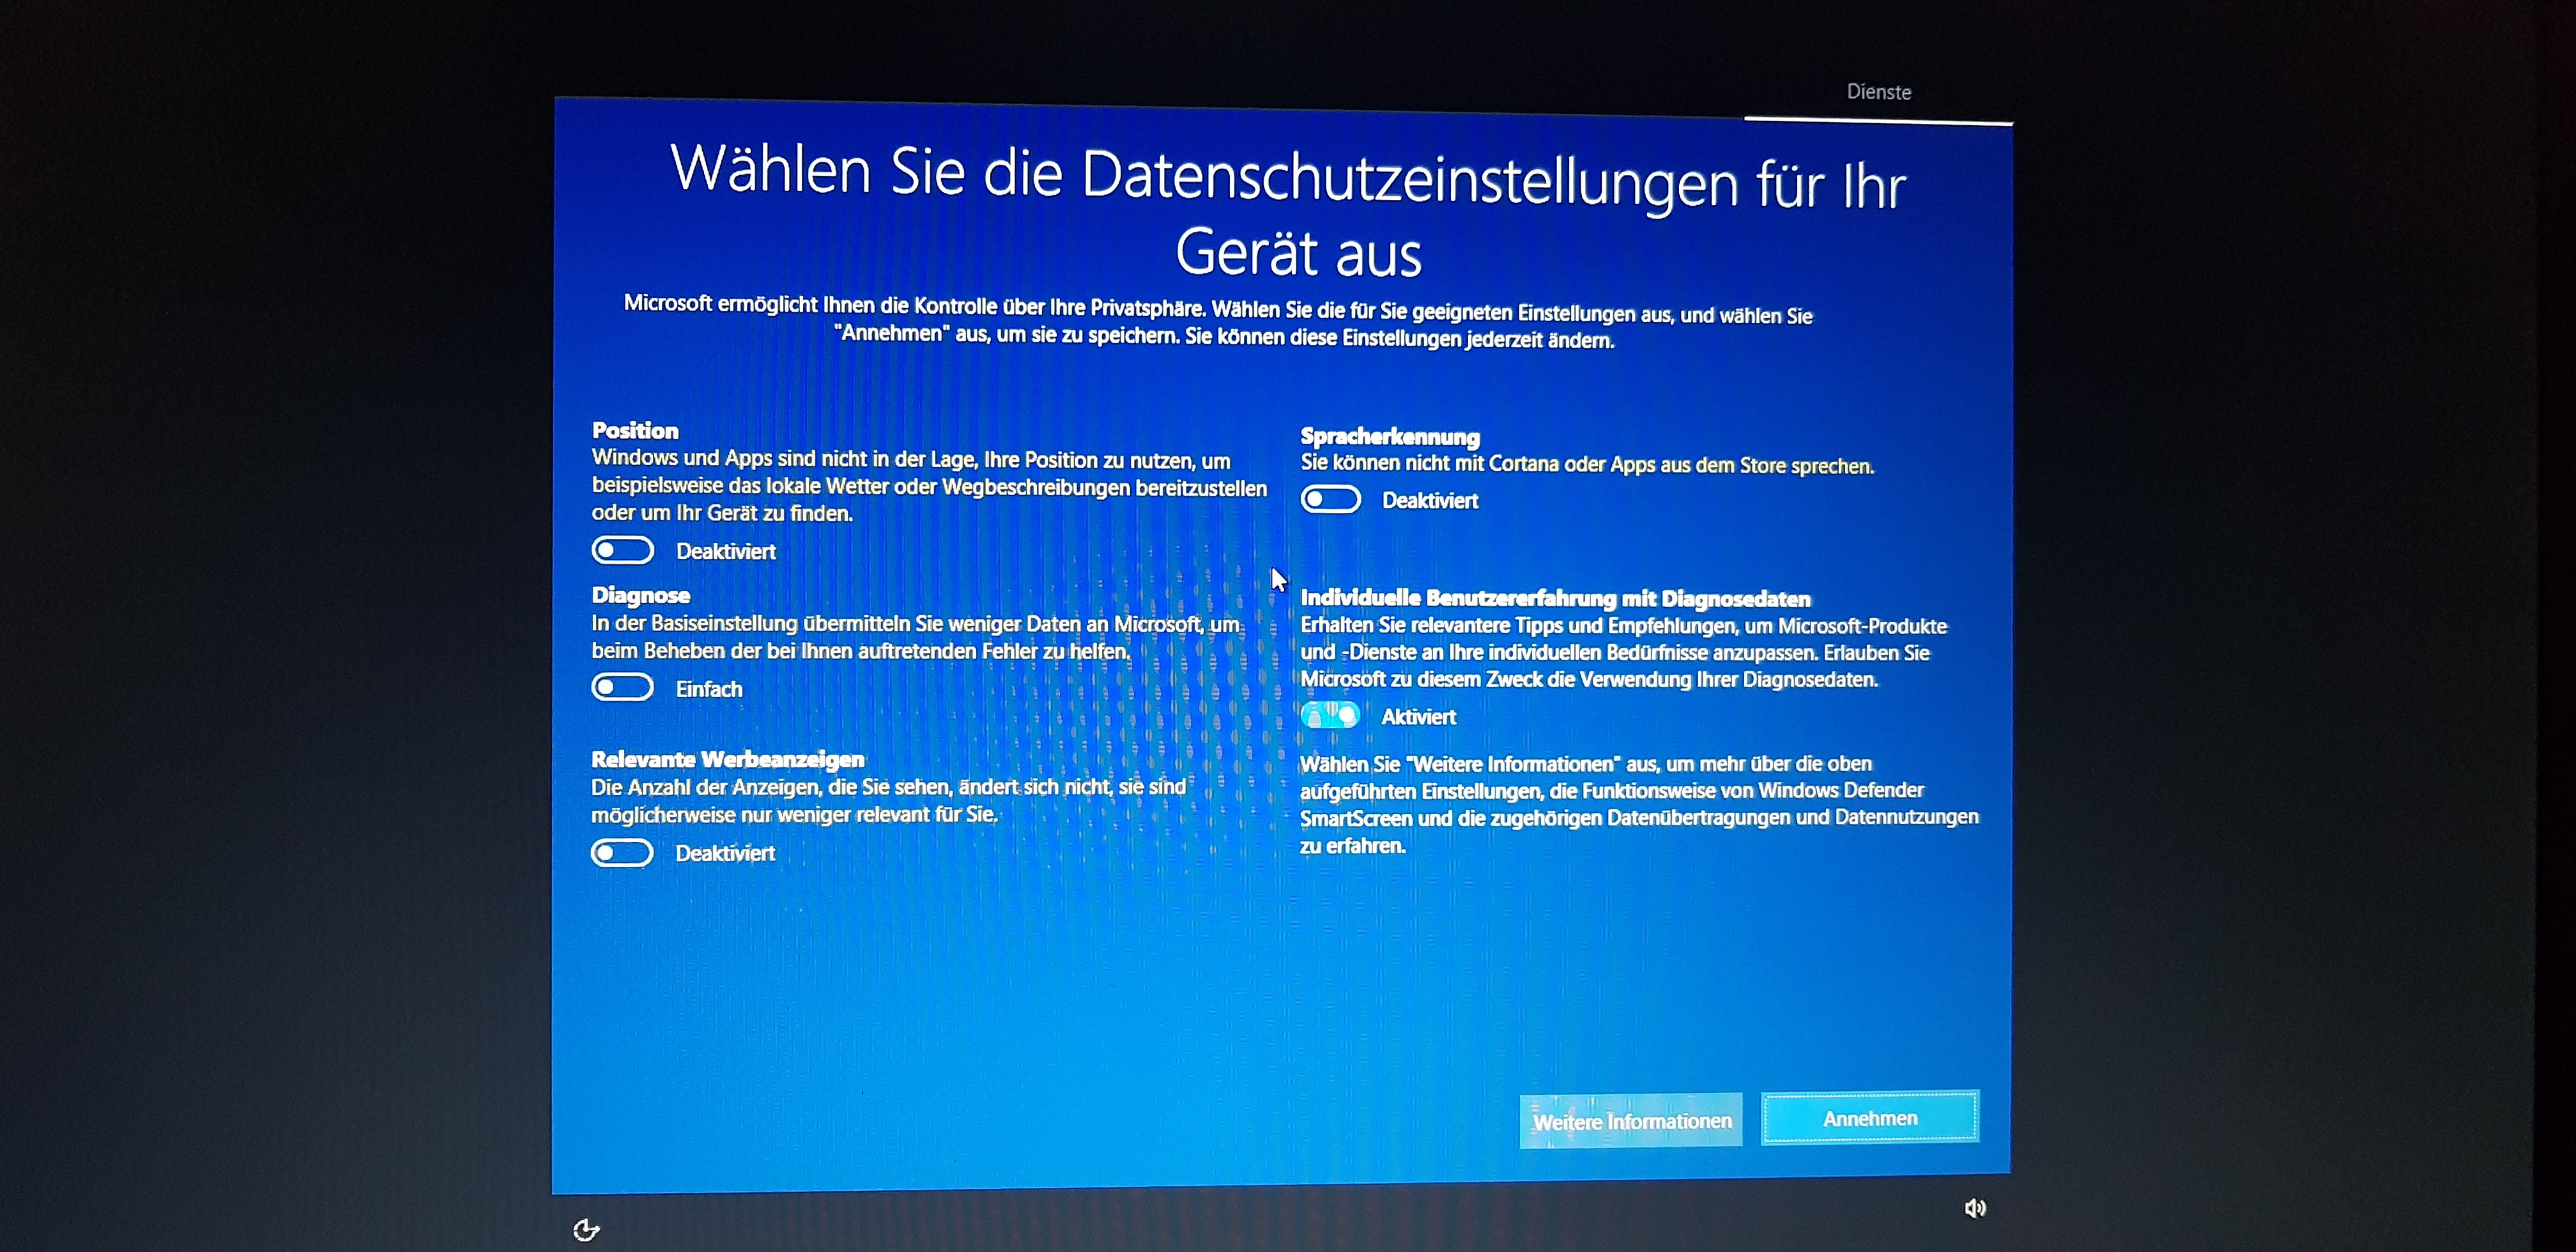 Windows 10 - Nach Update Datenschutzeinstellungen - Etwas hat nicht geklappt - Komme nicht...